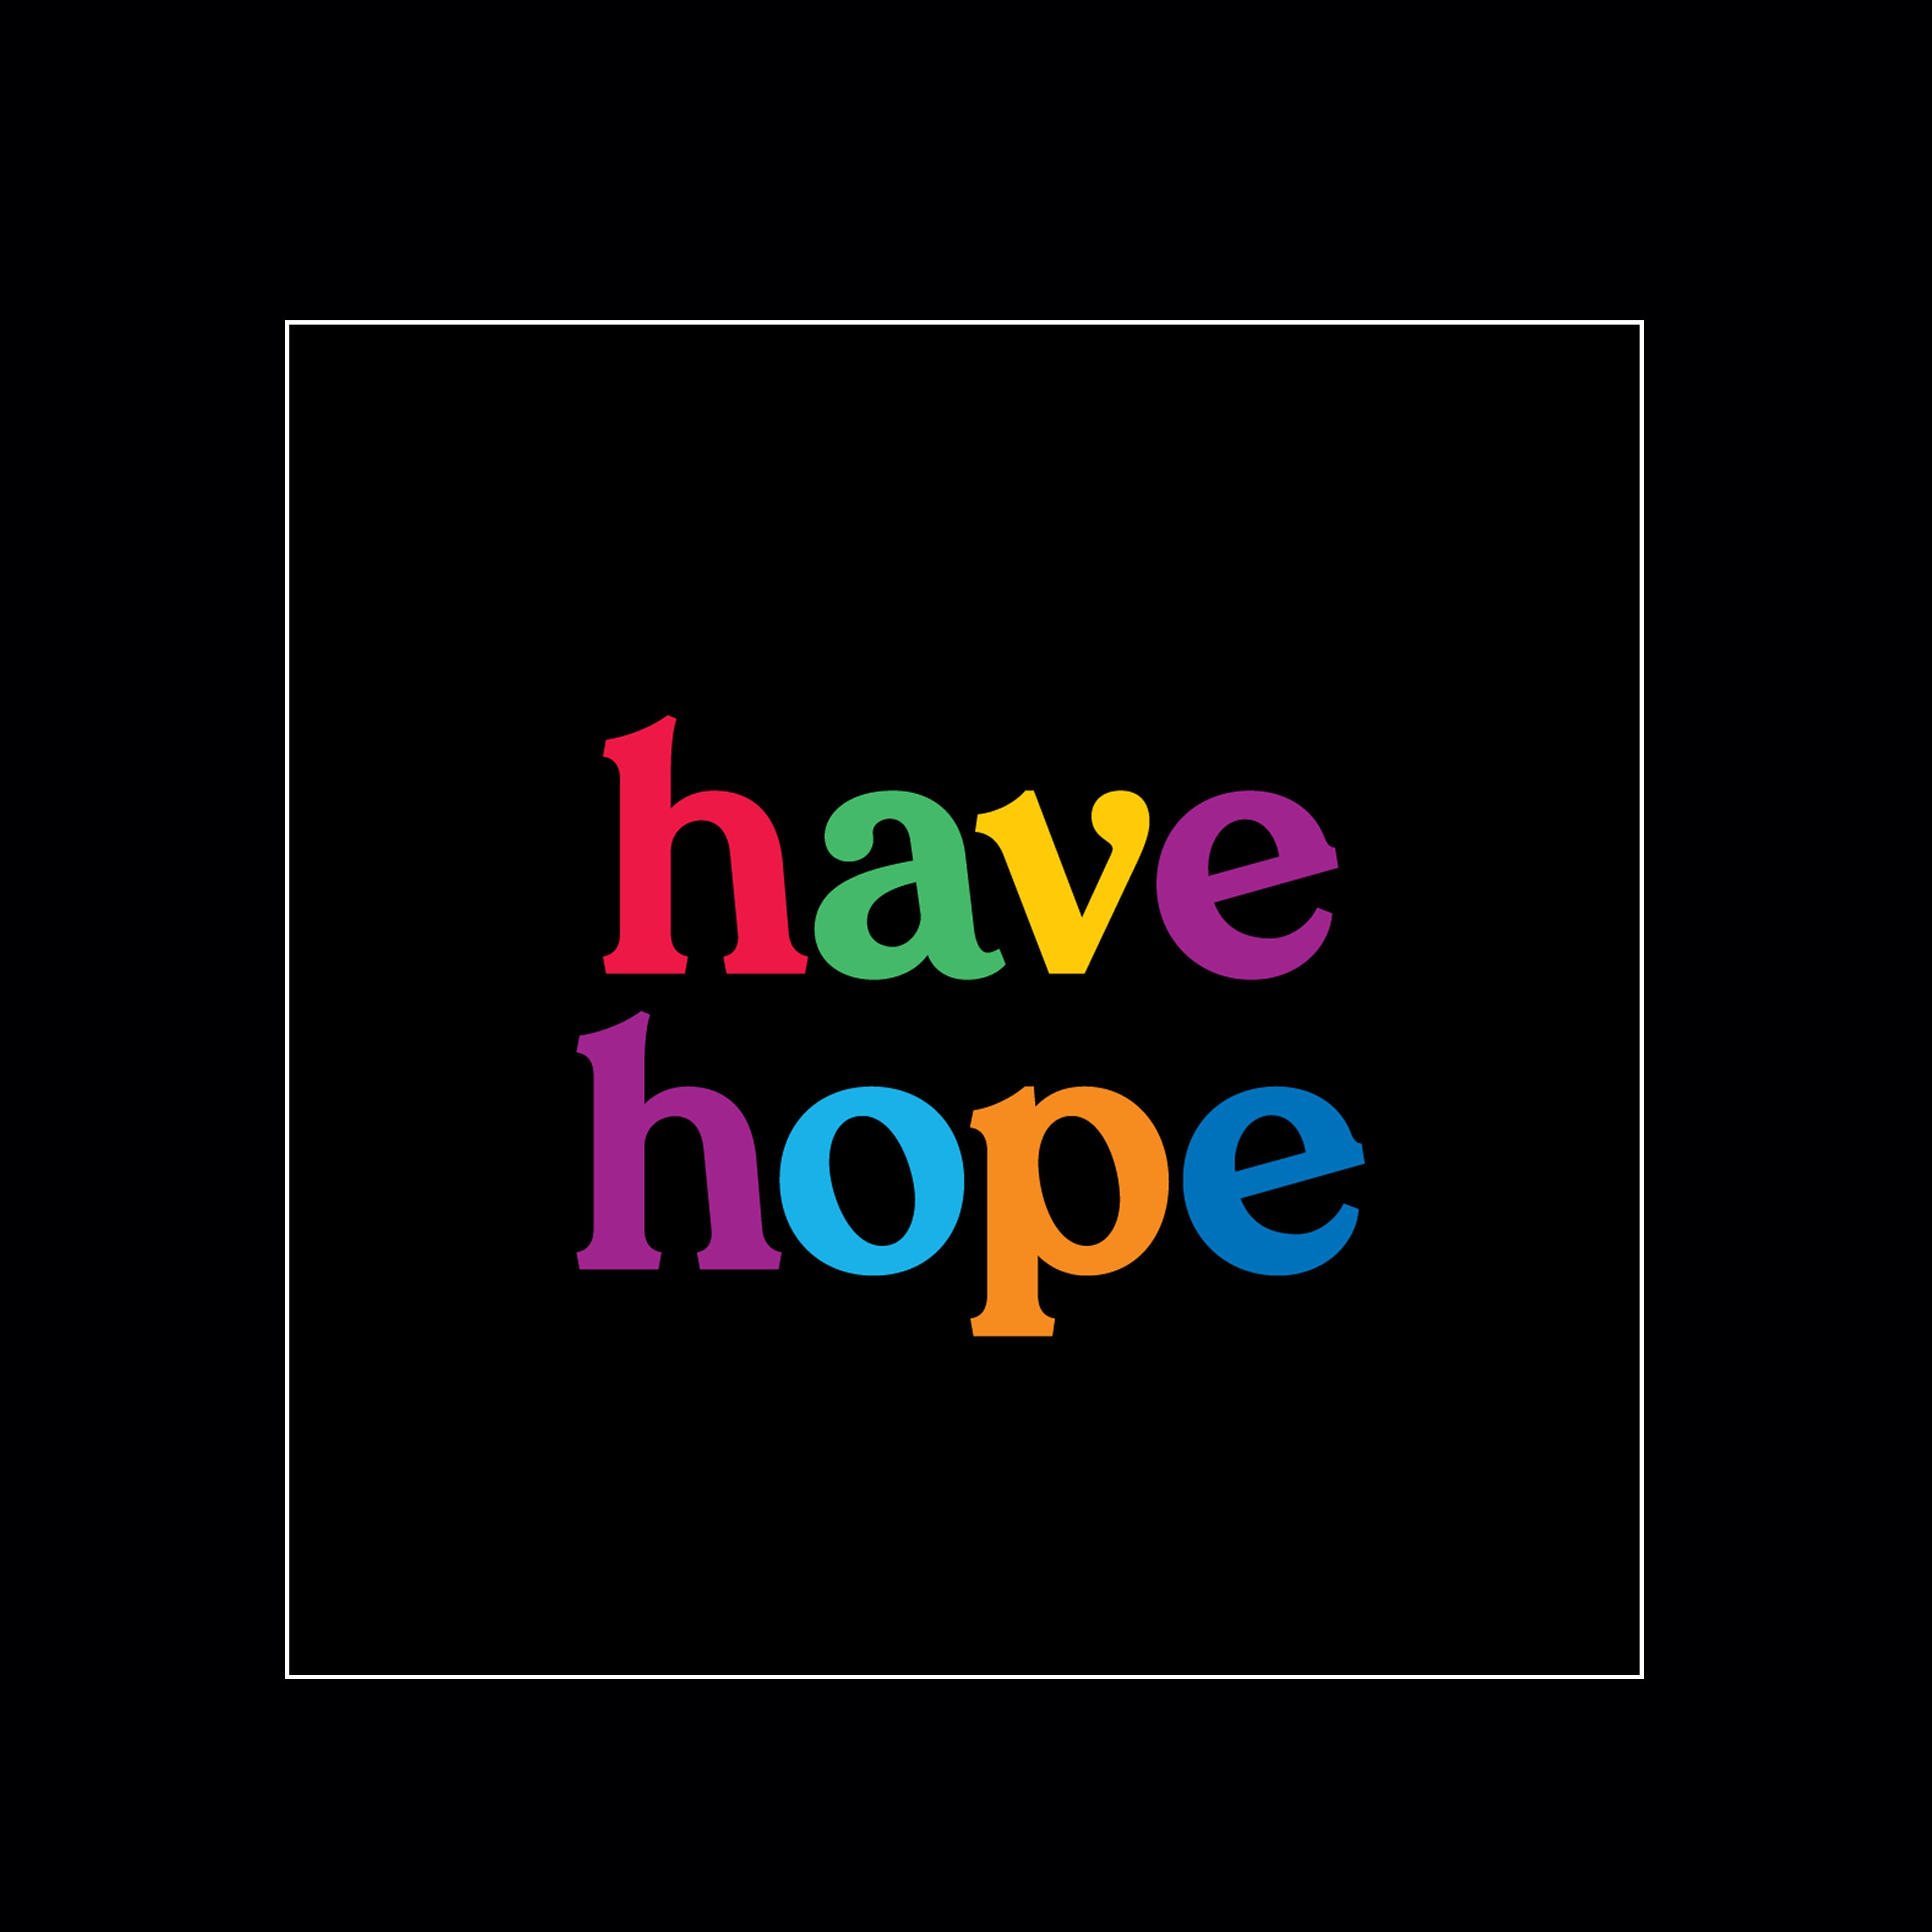 "have hope" magnet